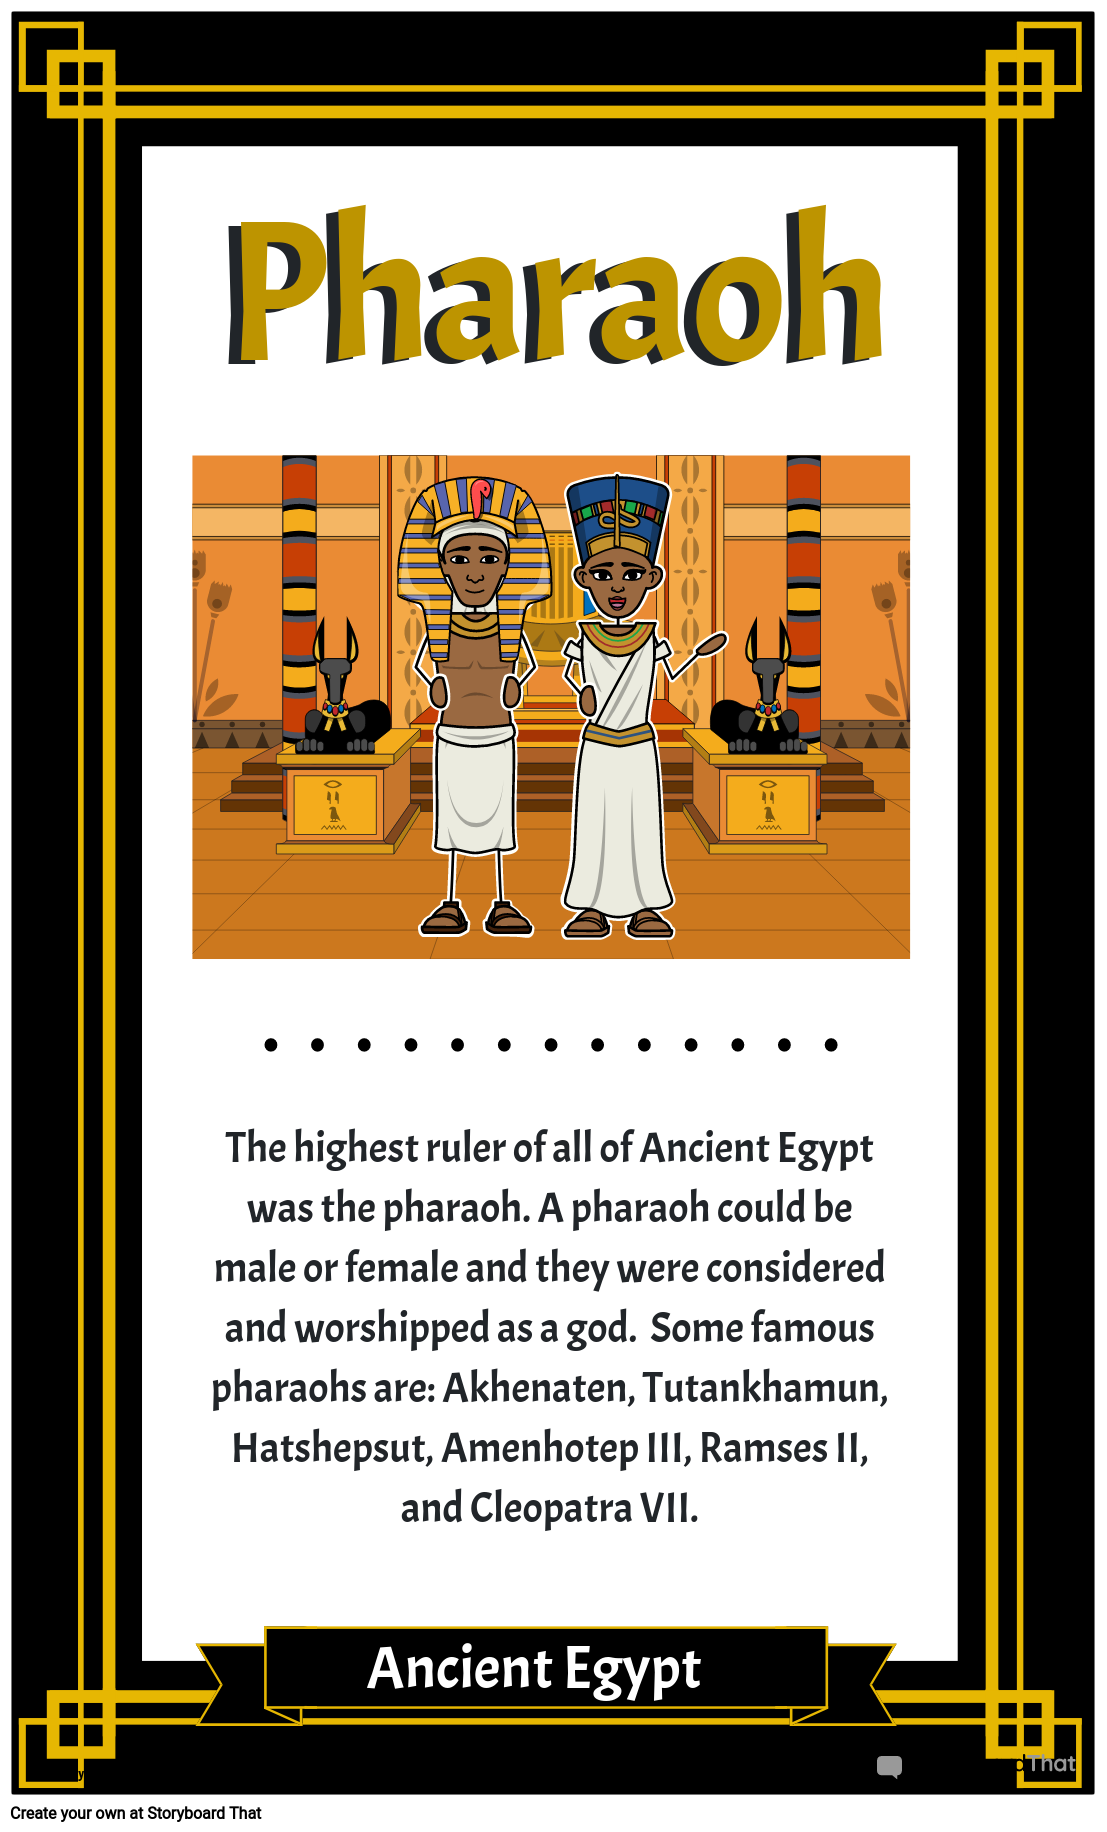 פוסטר אוצר מילים של מצרים העתיקה